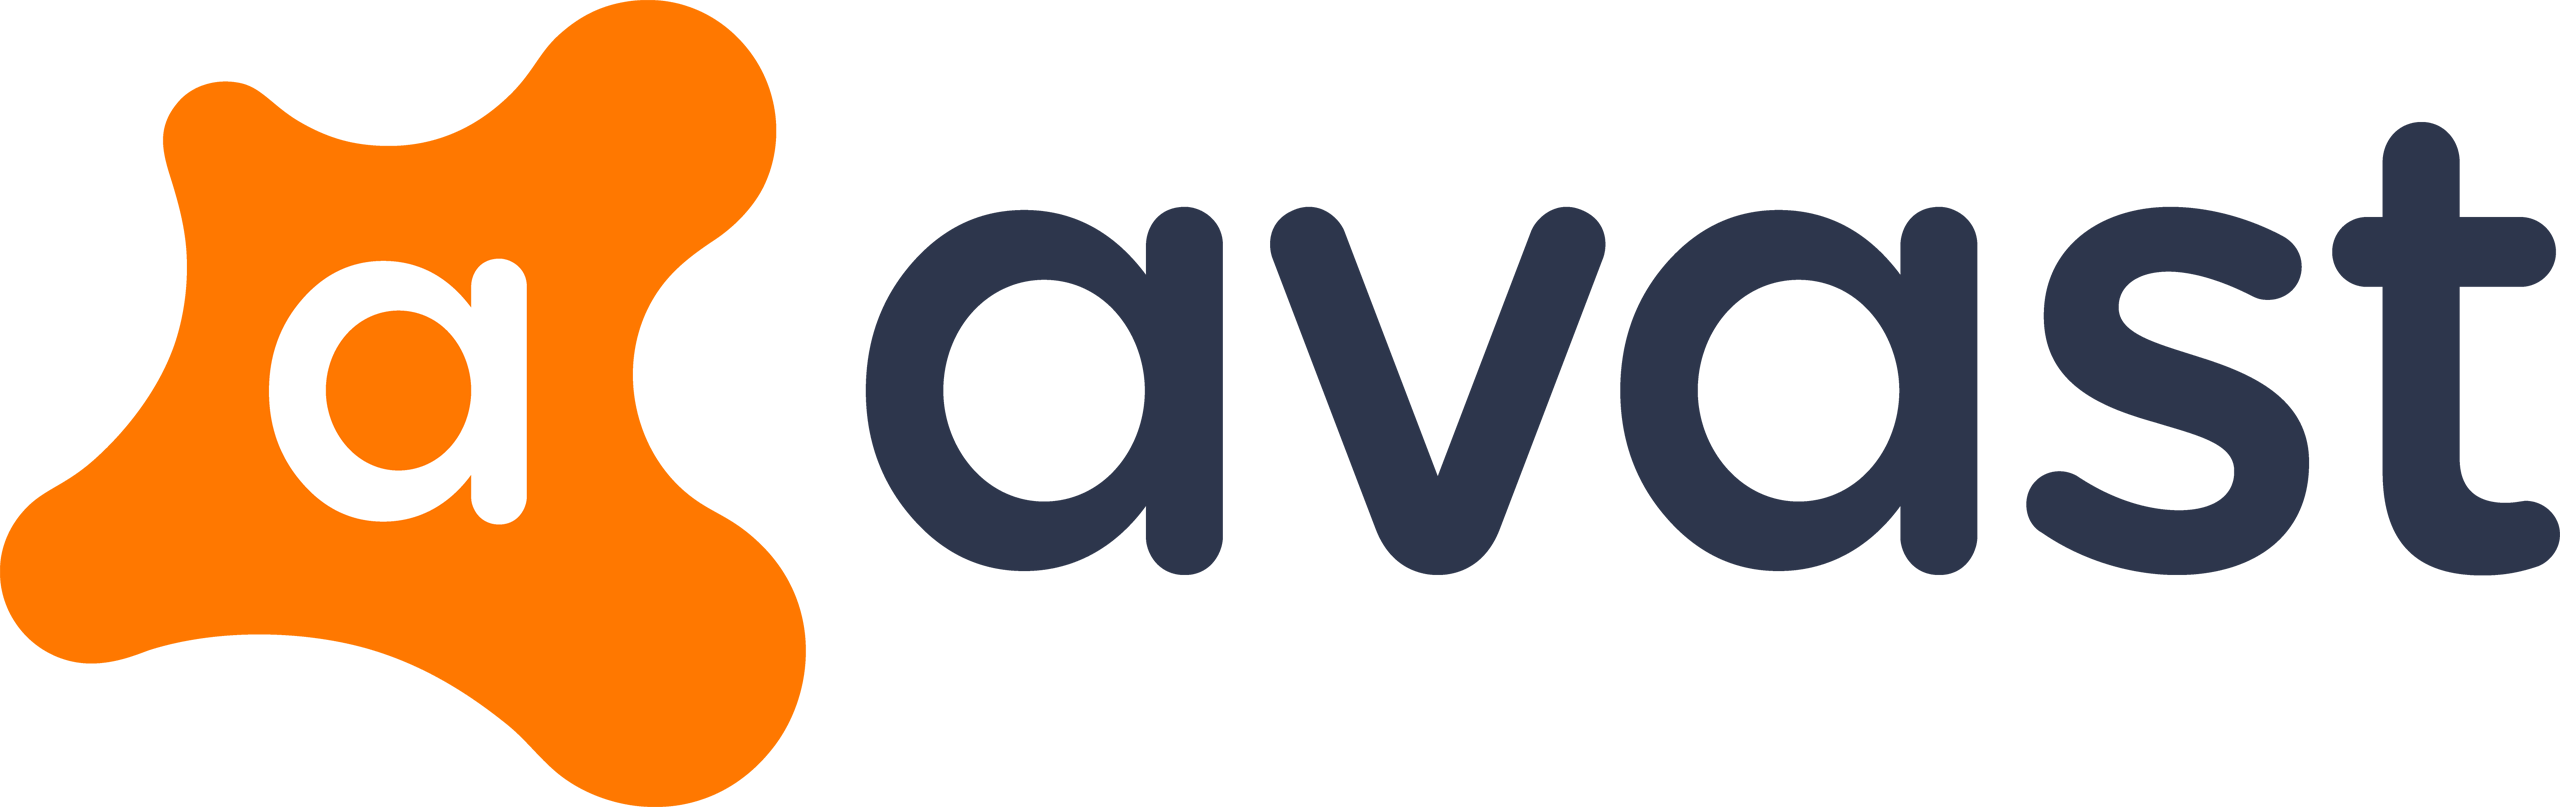 Avast - Avast Pro Antivirus (2018) (2560x807)